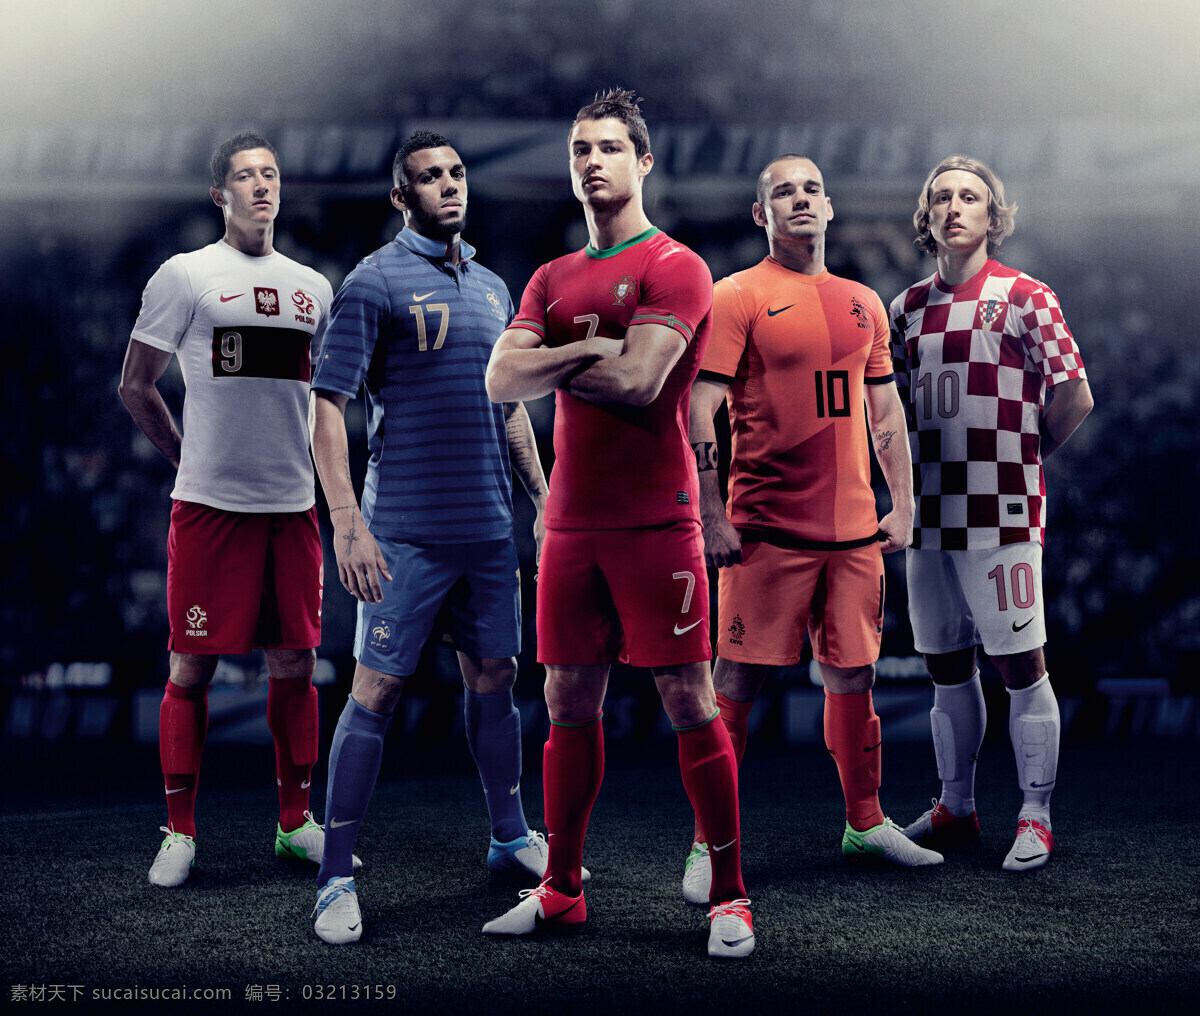 nike 广告宣传 平面广告 体育运动 文化艺术 足球 系列 平面 各国国家队 矢量图 日常生活